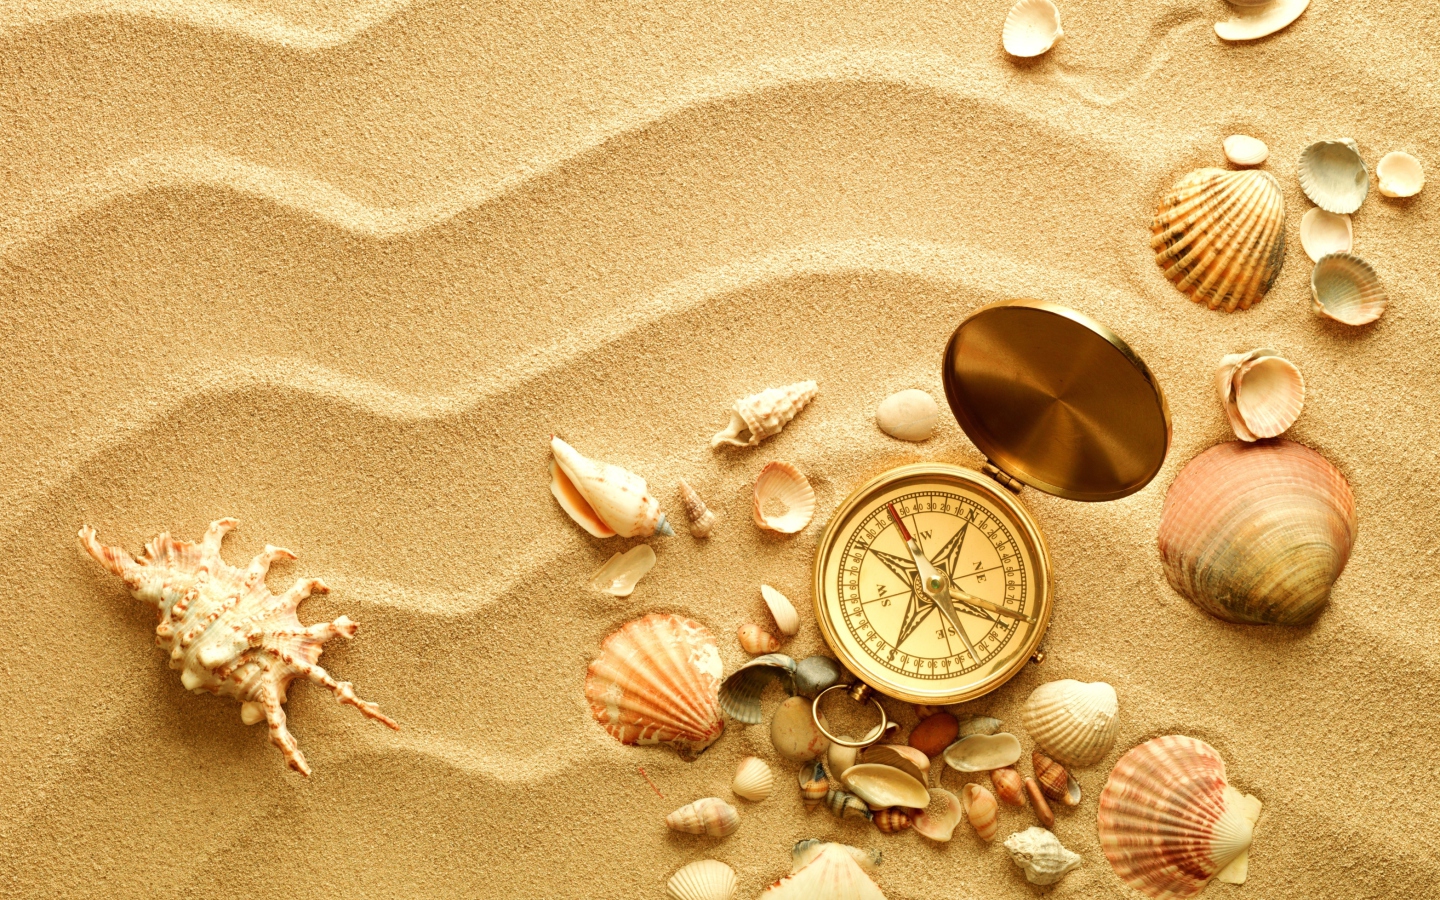 Обои Compass And Shells On Sand 1440x900